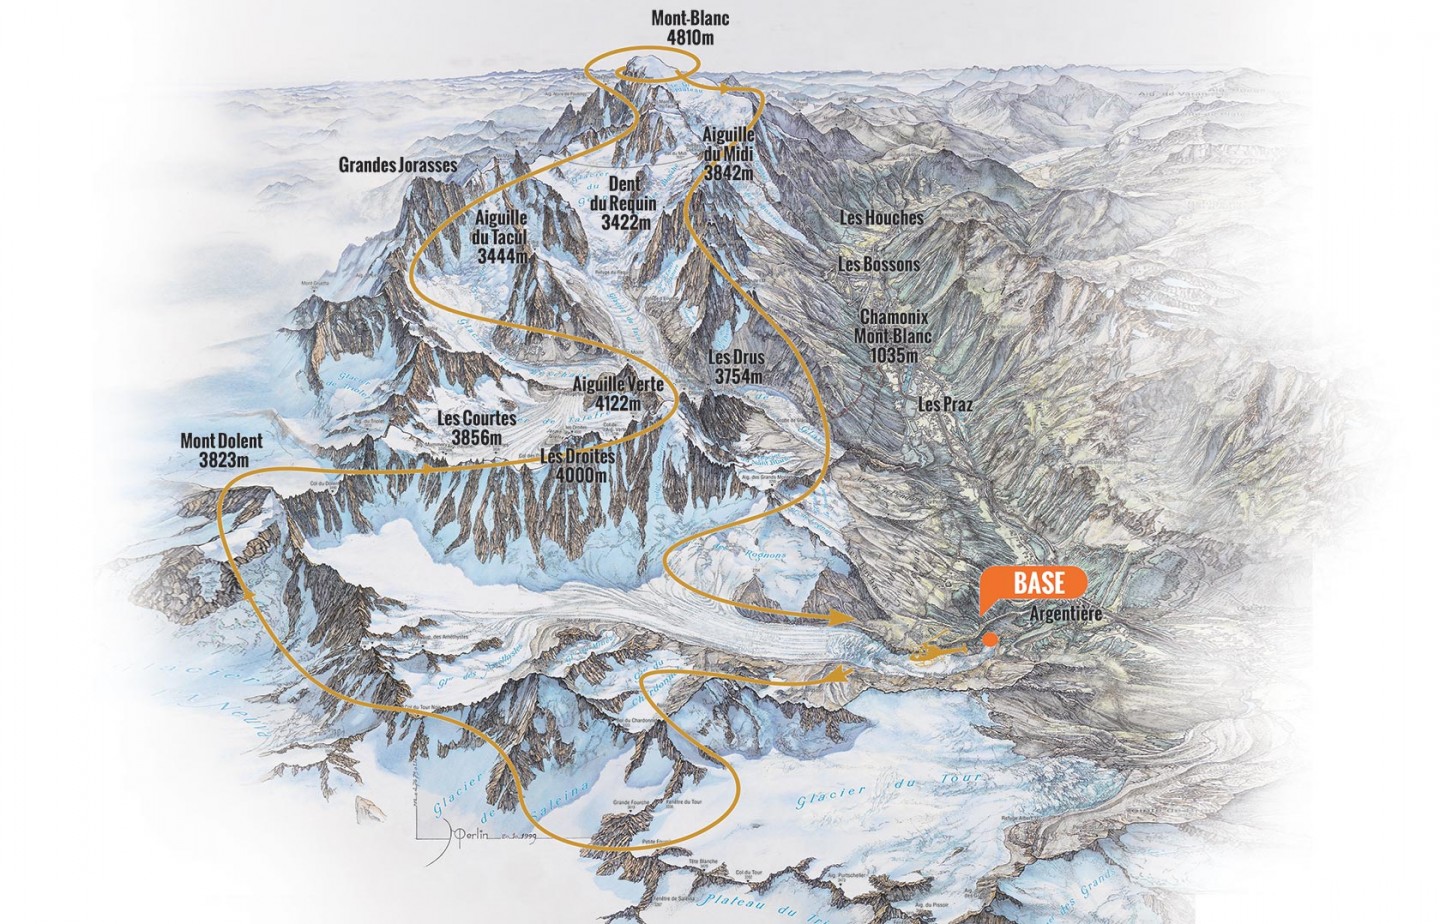 Vol Panoramique<br>30 minutes<br>Massif du Mont-Blanc